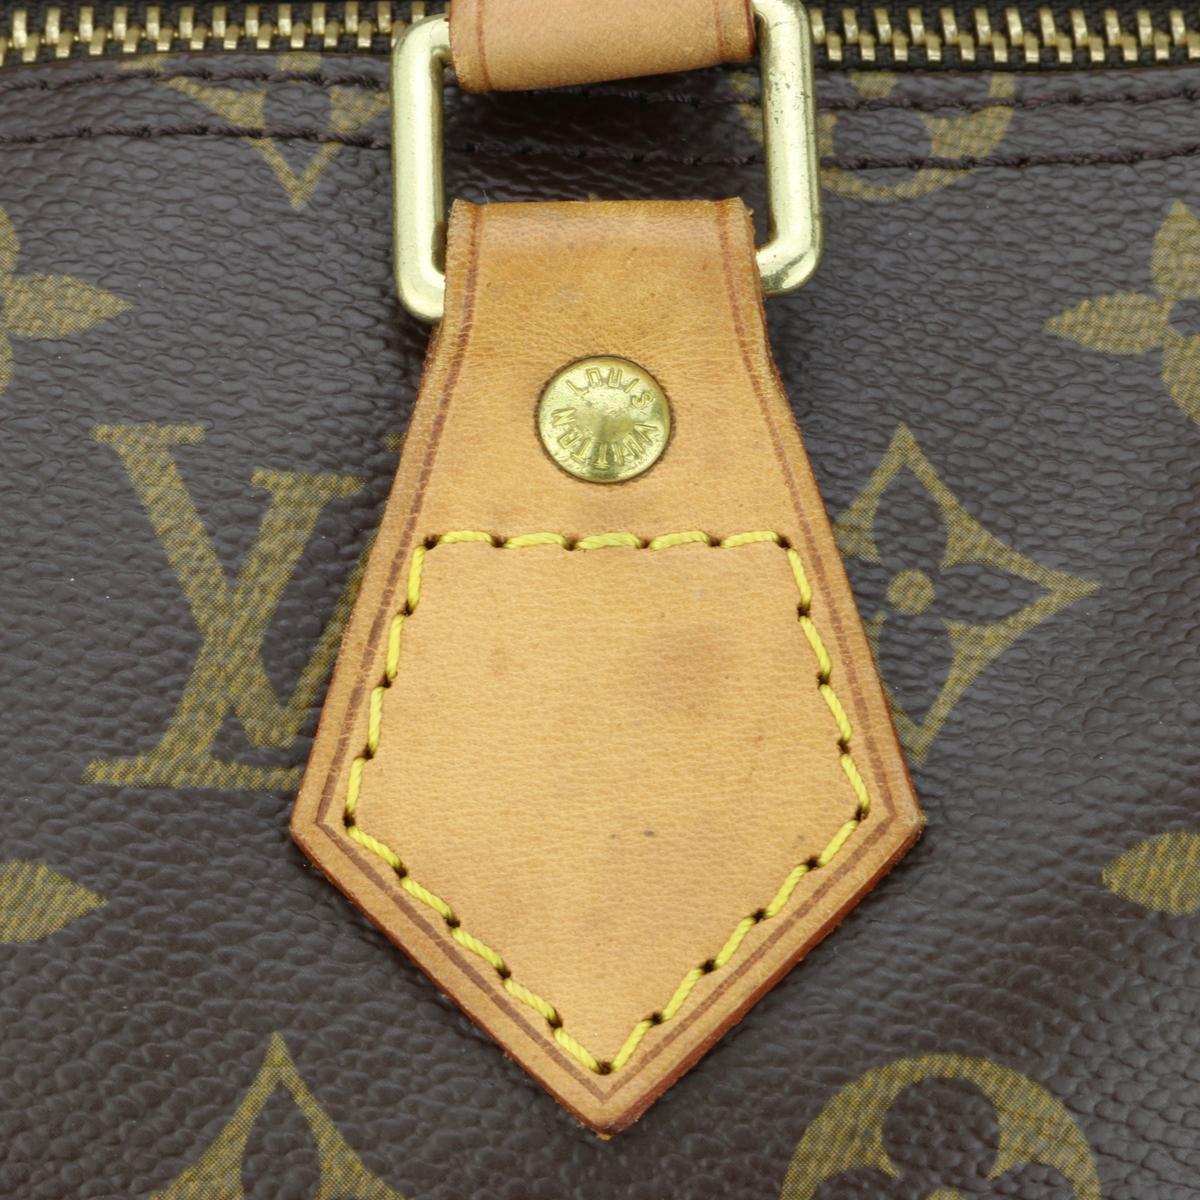 Louis Vuitton Speedy 35 Bag in Monogram 2005 10